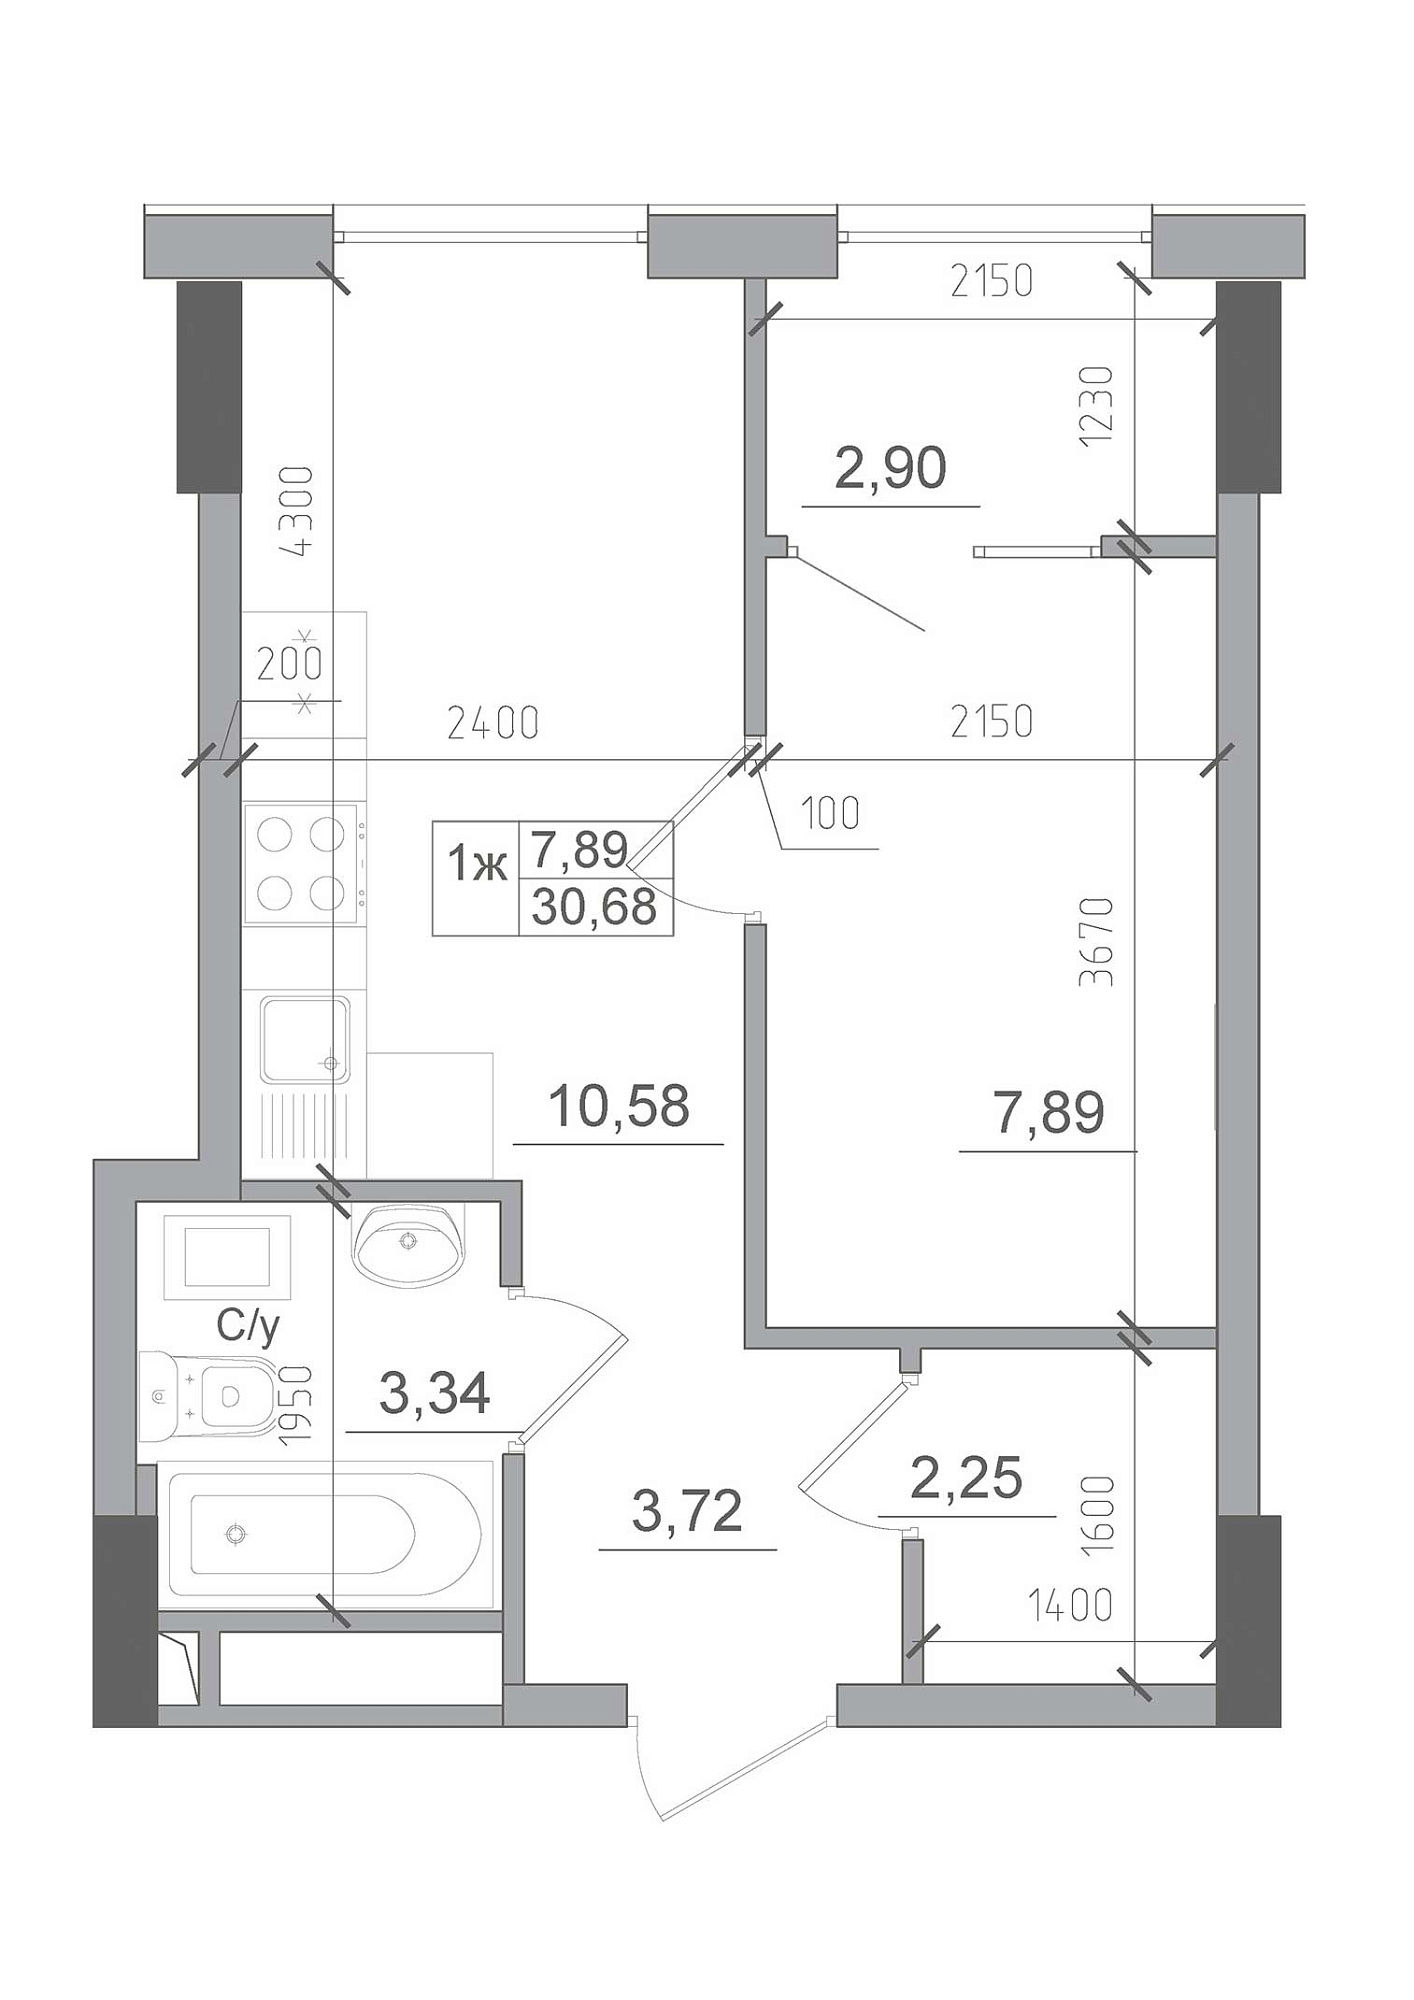 Планировка 1-к квартира площей 30.68м2, AB-22-06/00012.